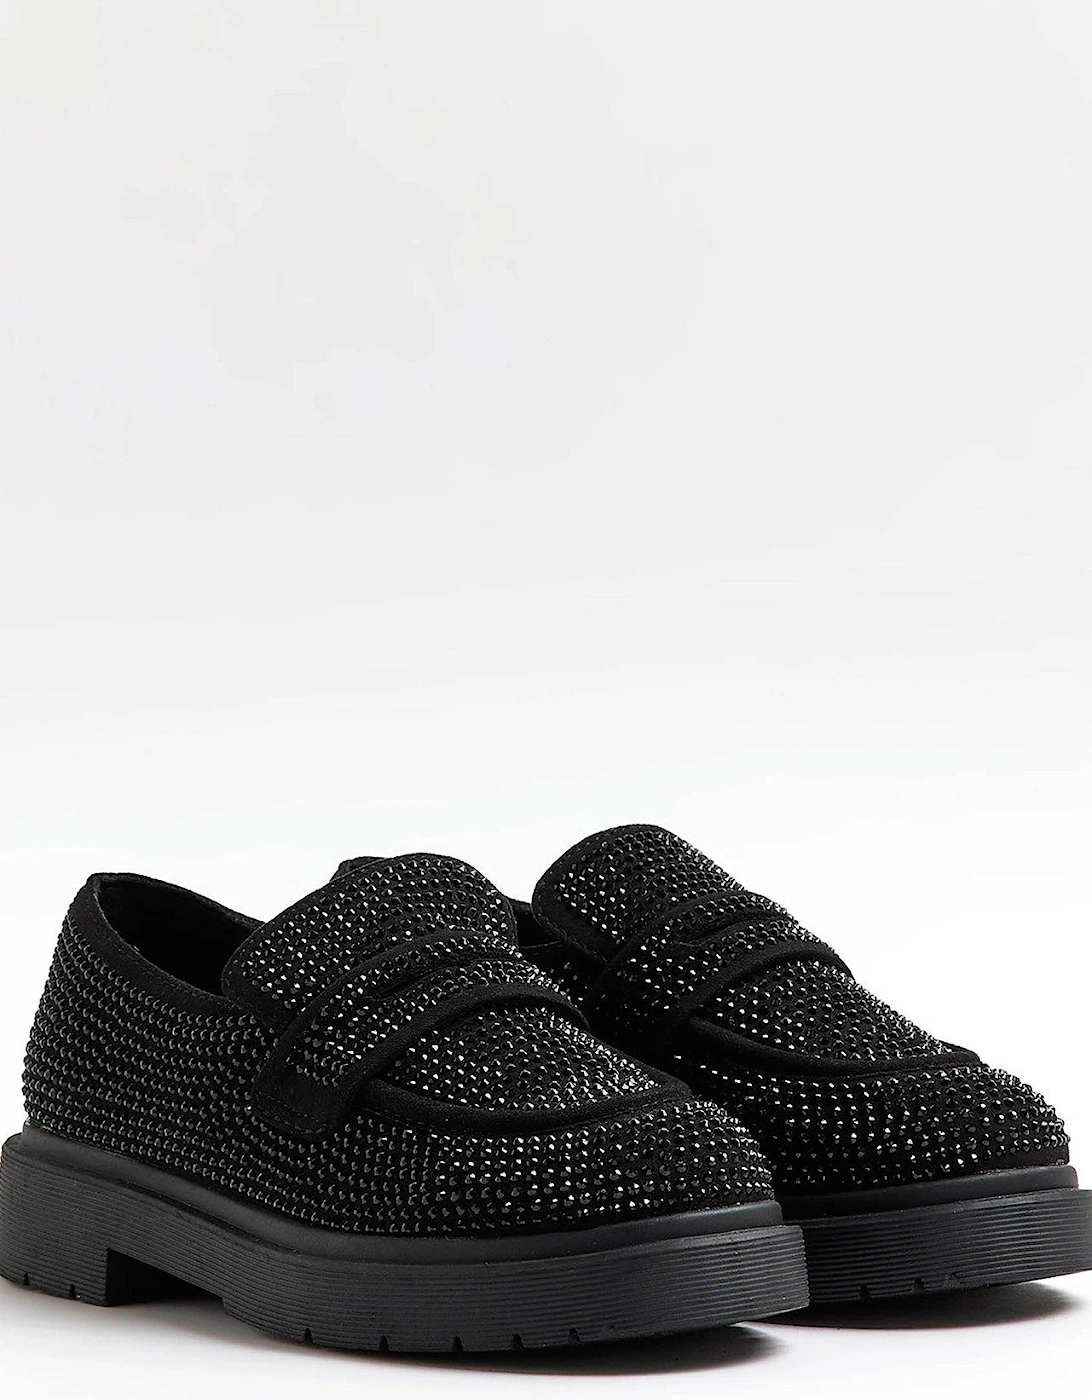 Girls Embellished Loafers - Black